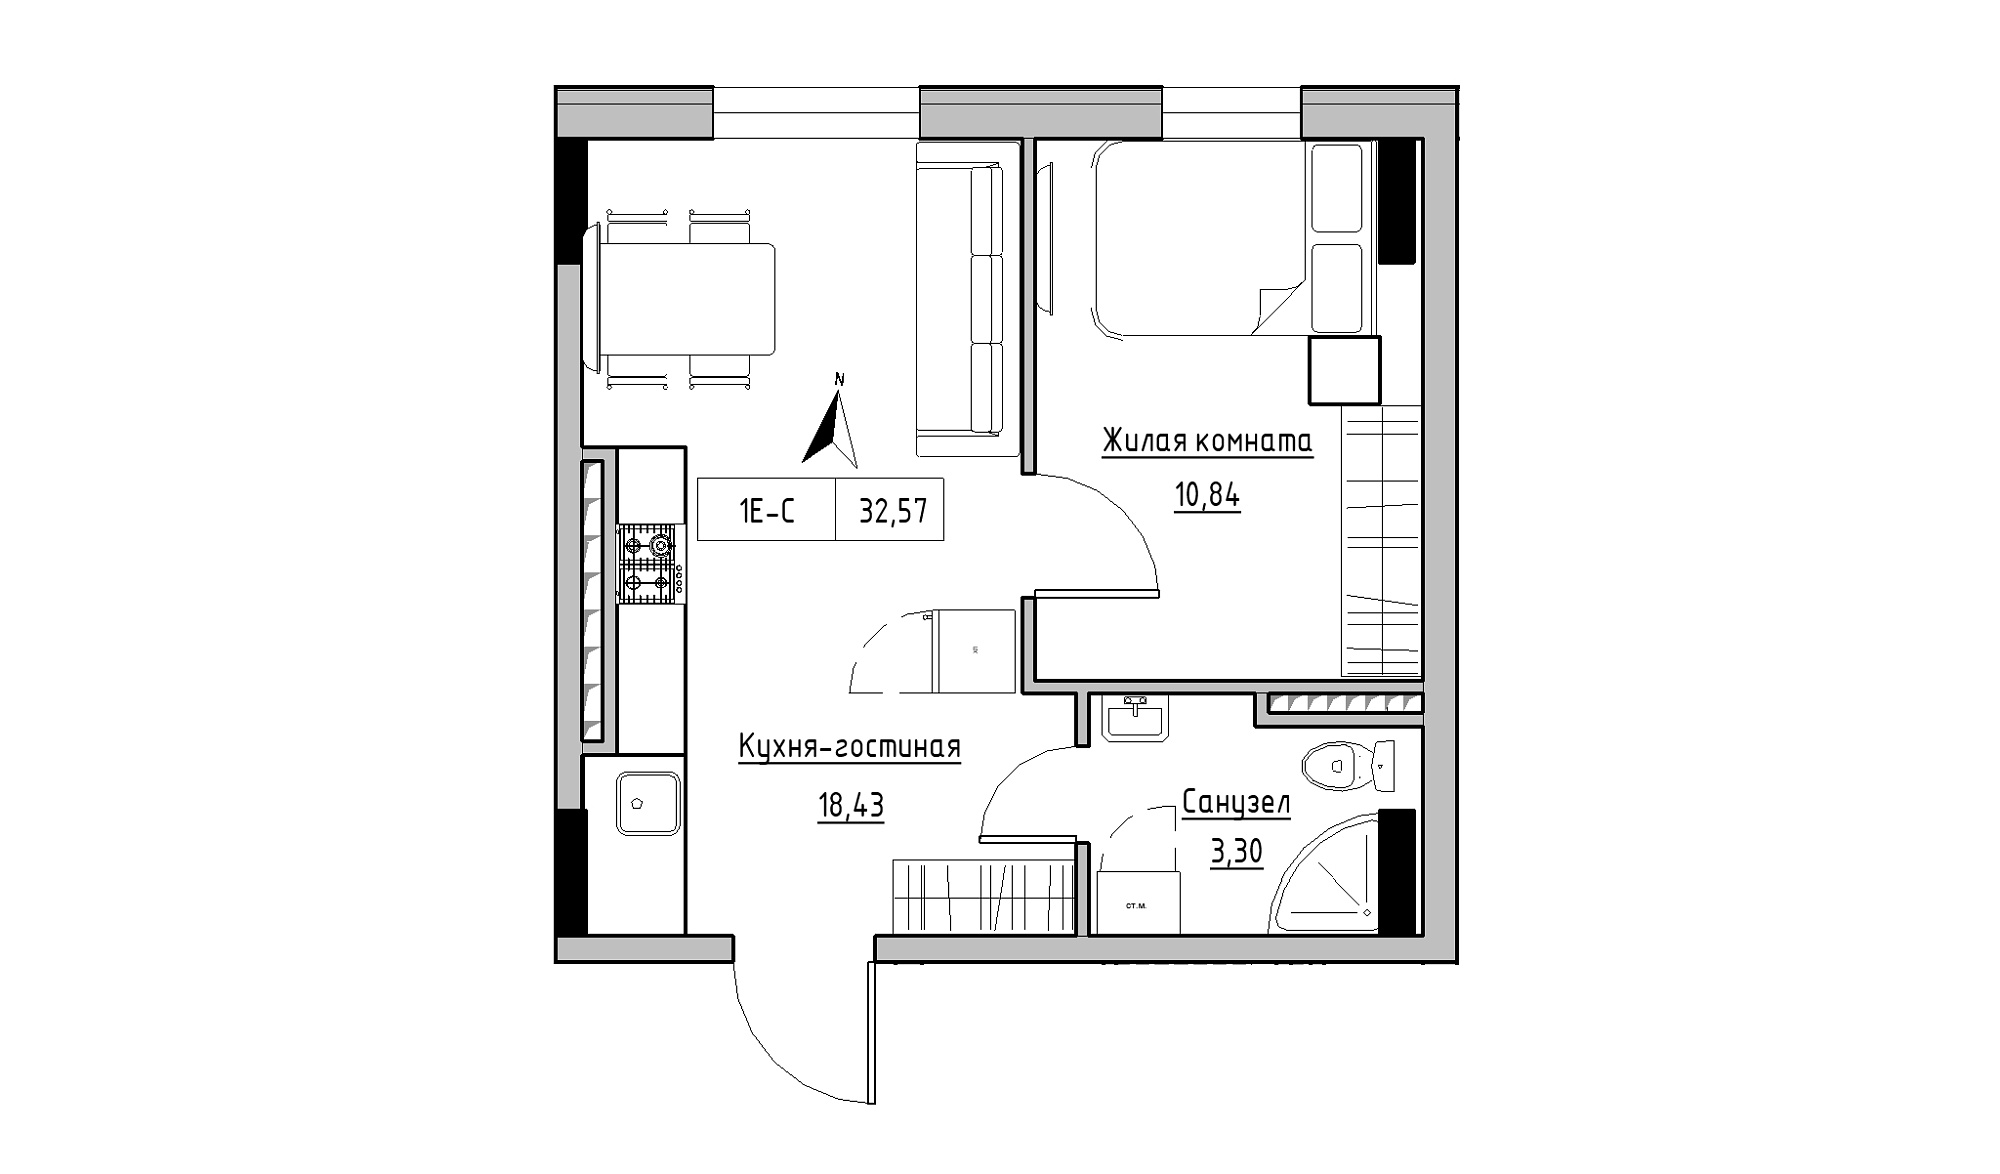 Планування 1-к квартира площею 32.57м2, KS-025-06/0011.